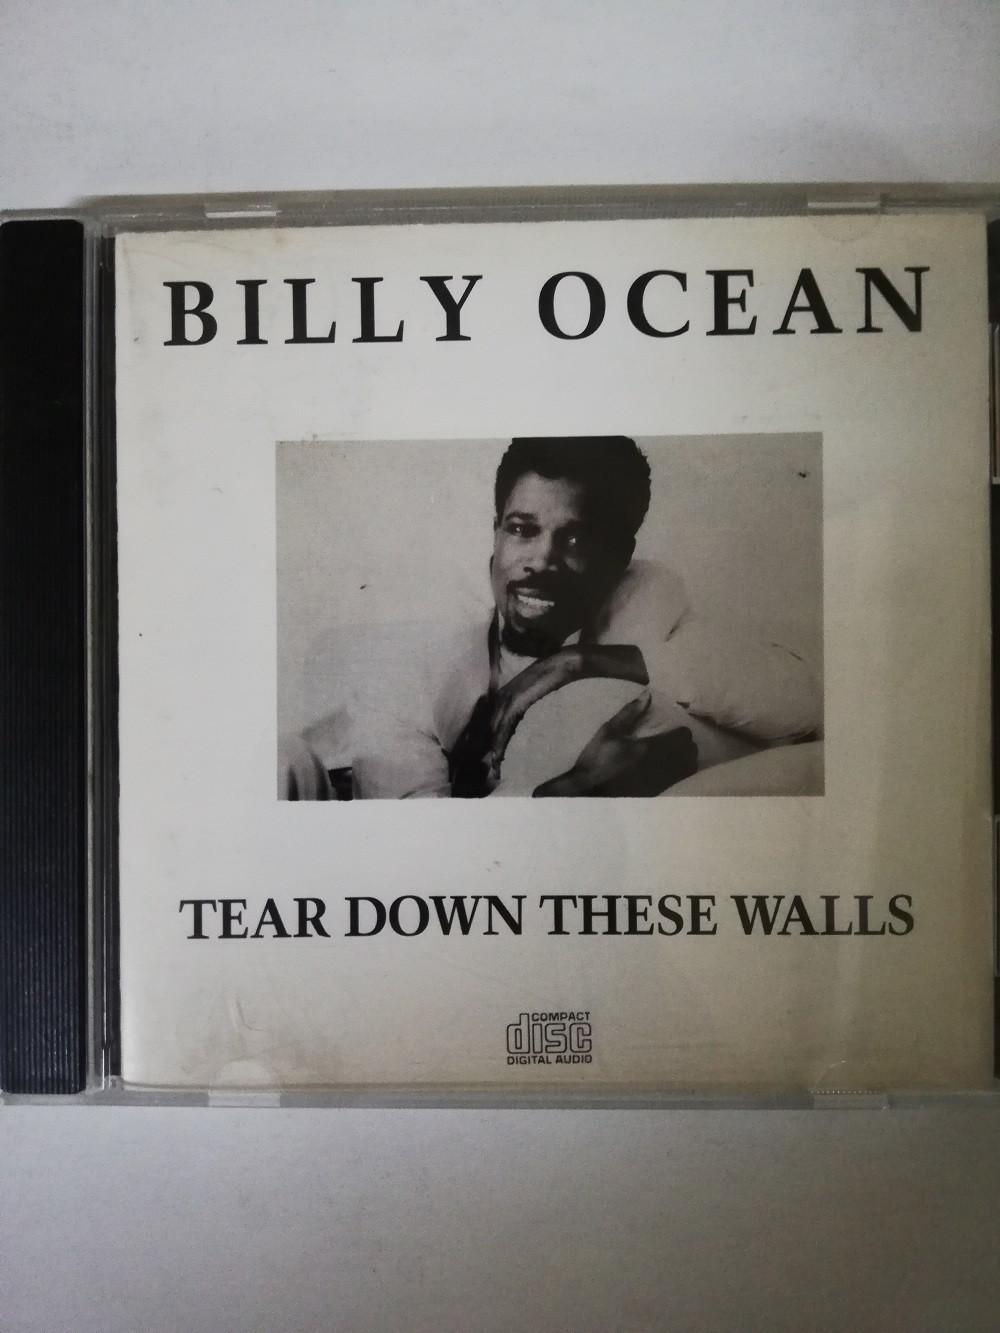 Imagen CD BILLY OCEAN - TEAR DOWN THESE WALLS 1